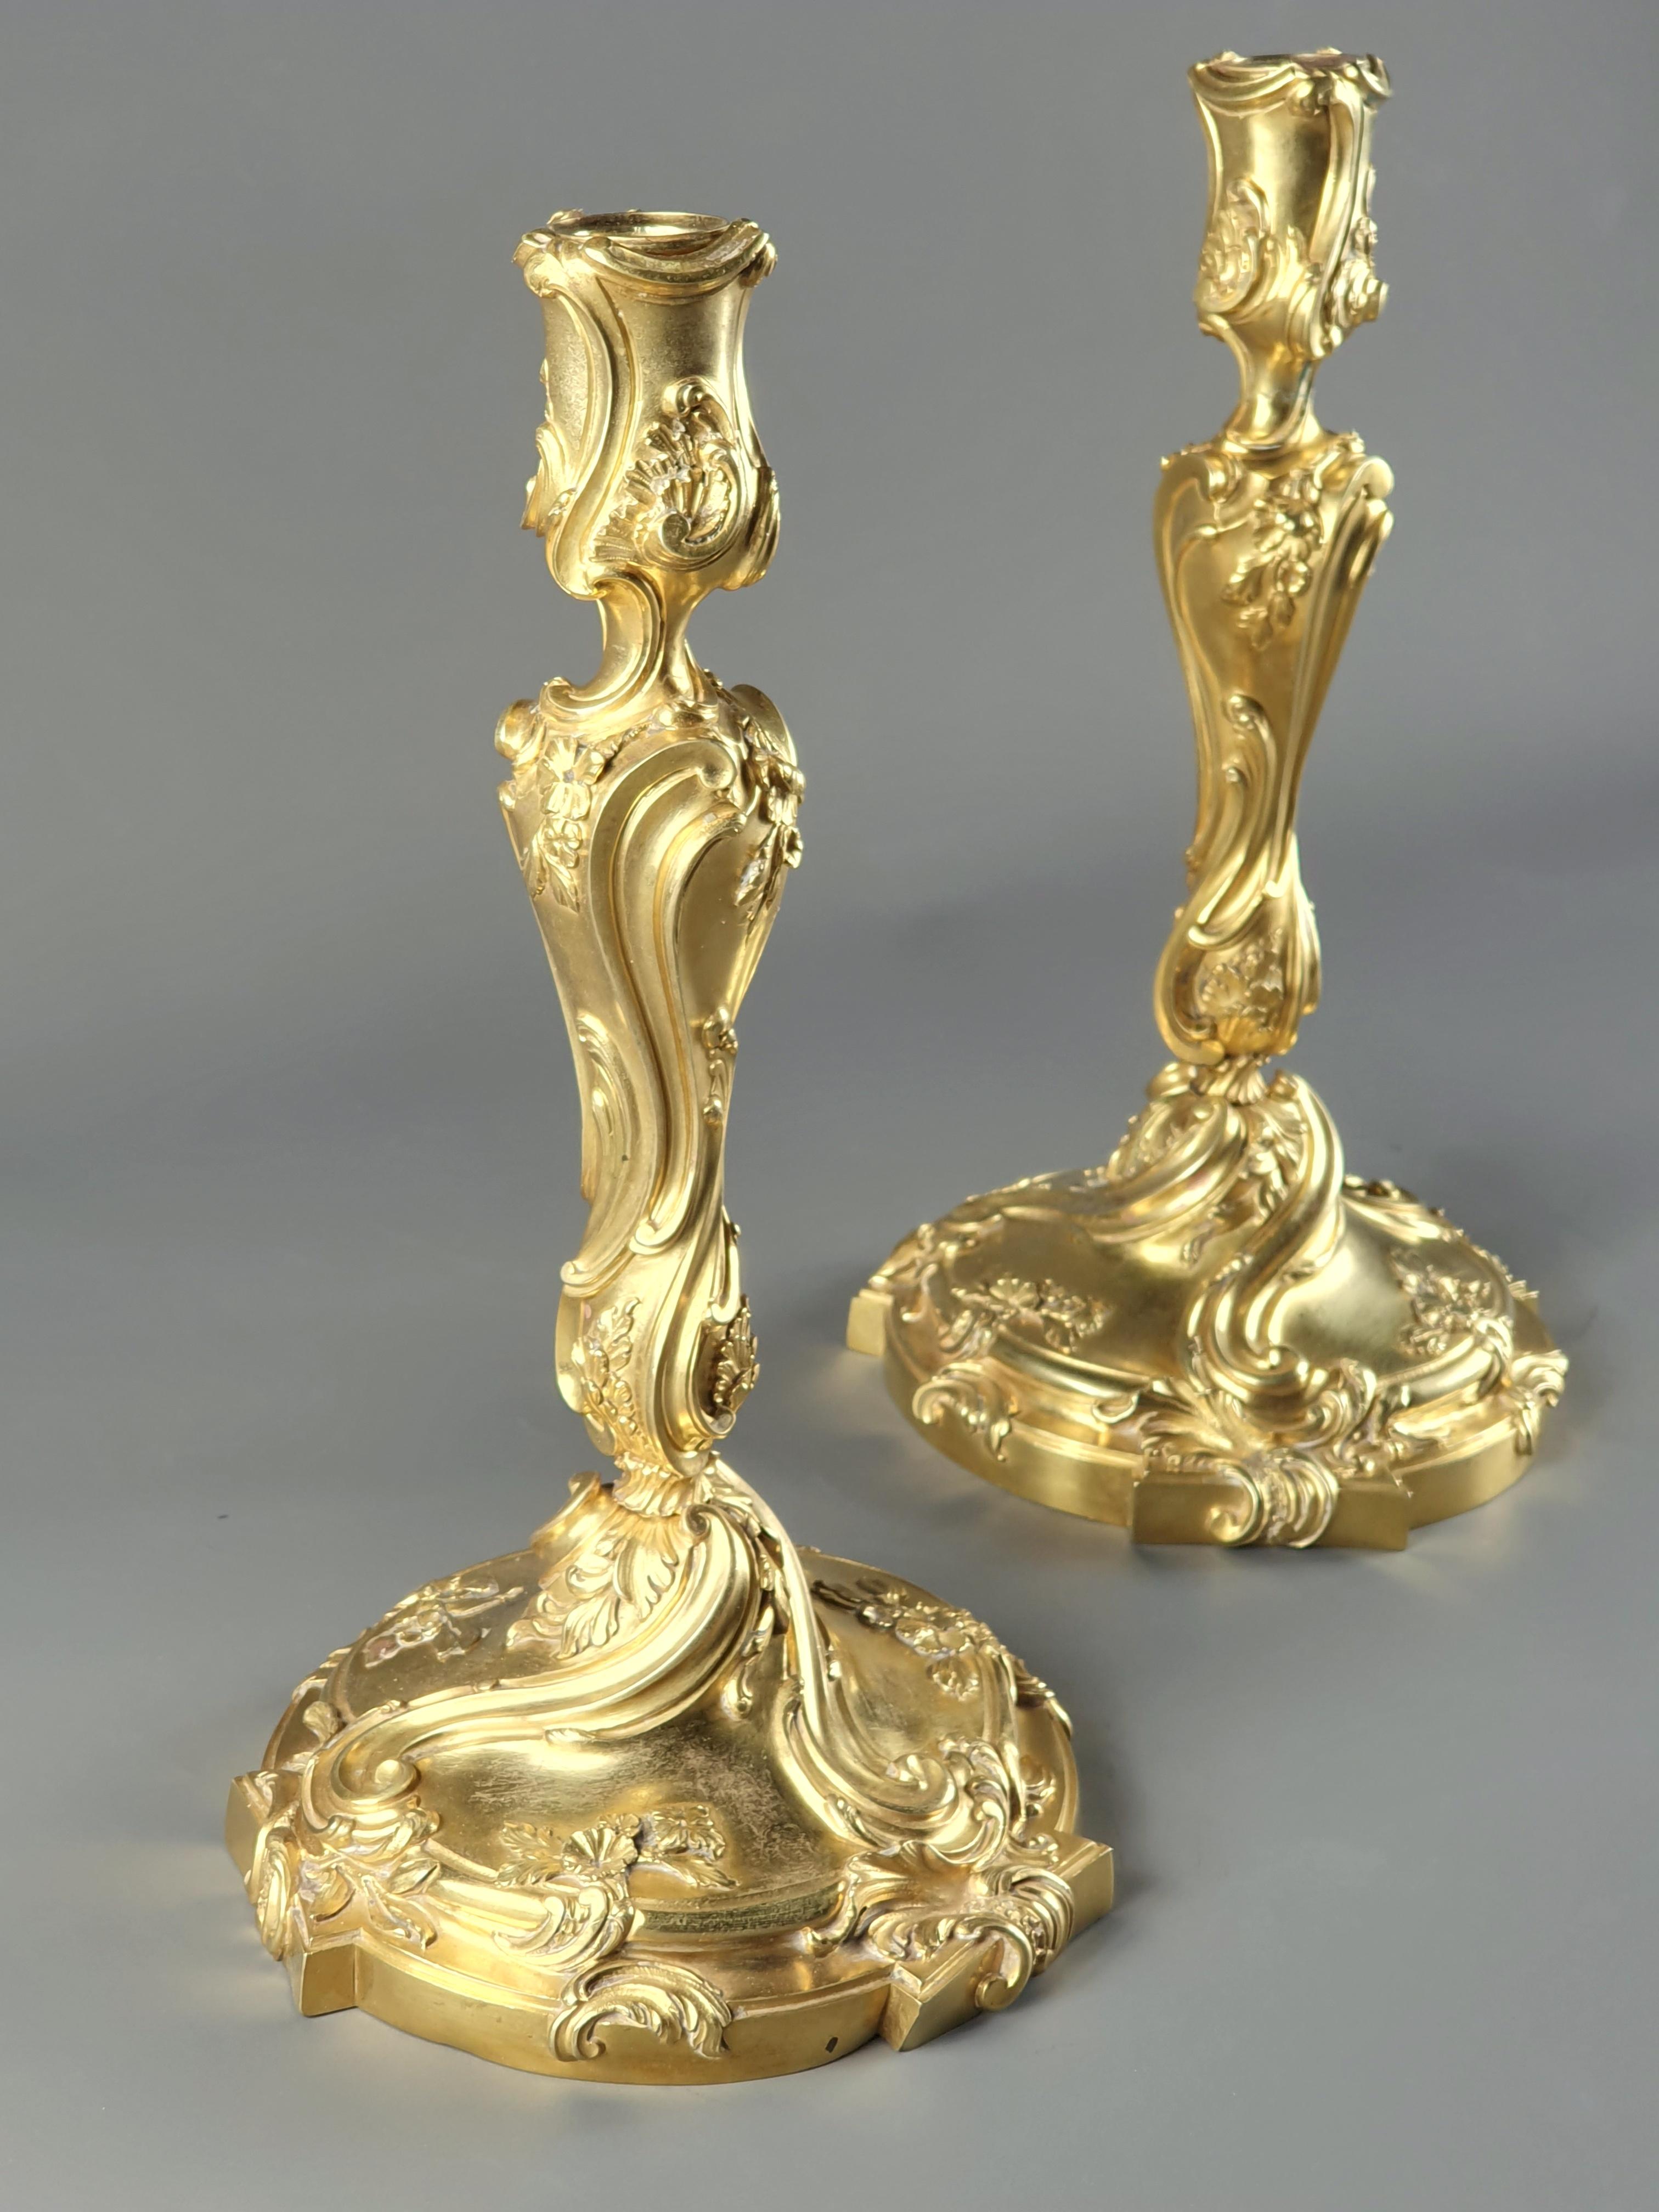 Paar Louis XV Rocaille Stil Kerzenständer in sehr fein gemeißelt vergoldeter Bronze mit Rollen, Rollen und Blumen verziert.

Pariser Werk des 19. Jahrhunderts von hervorragender Qualität.

Unleserlicher Stempel (HD?), möglicherweise Henry Dasson.
